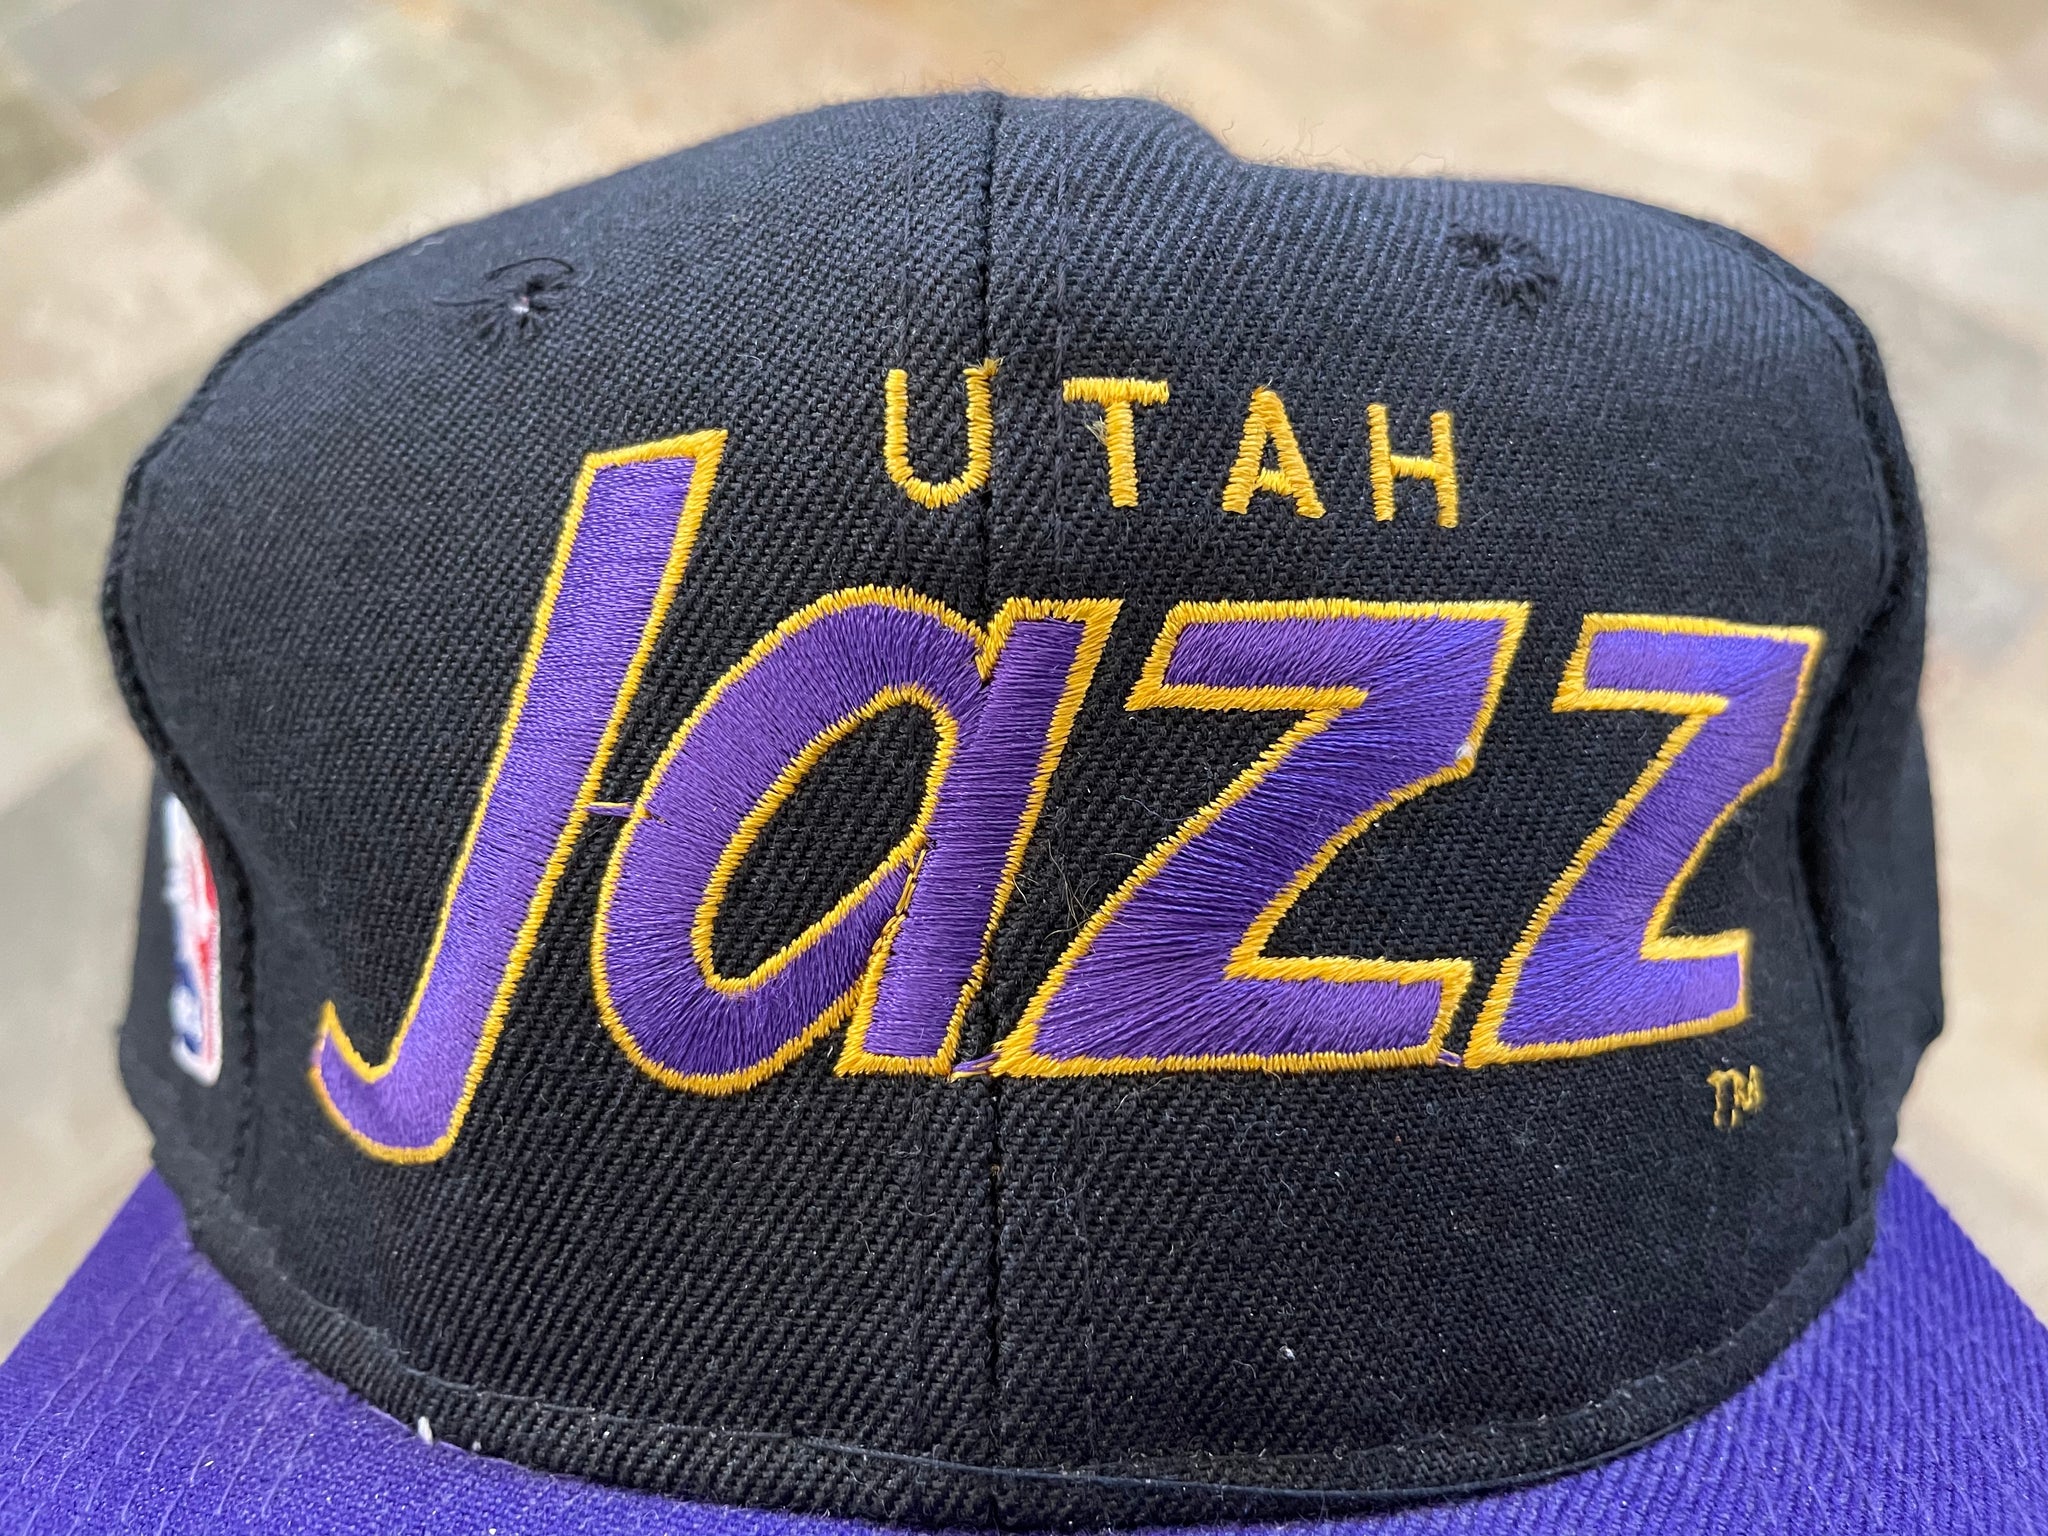 Vintage 1997 Utah Jazz Sports Specialties Draft Day Snapback Hat